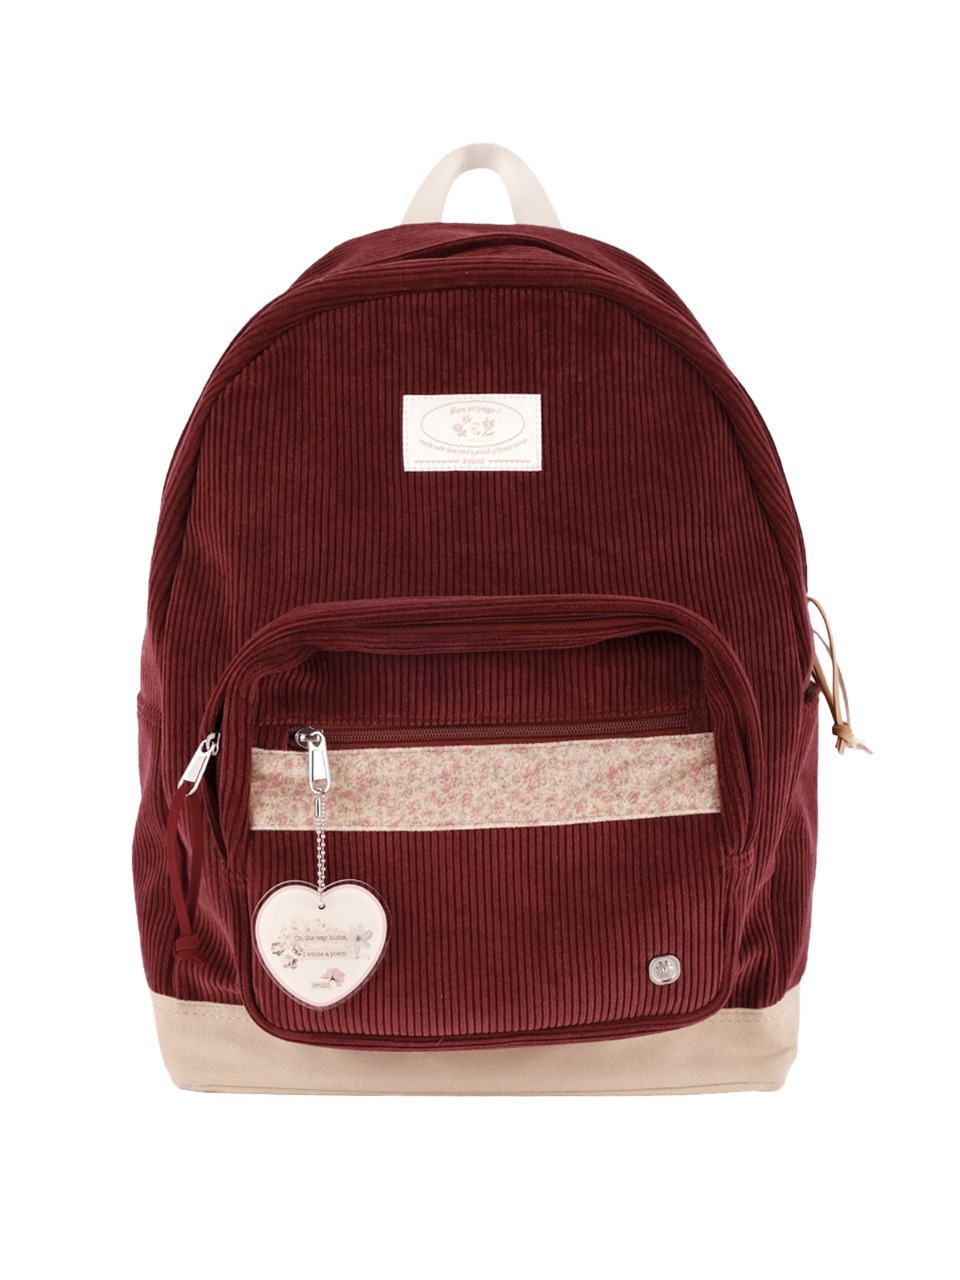 Bon voyage backpack - burgundy - ovuni